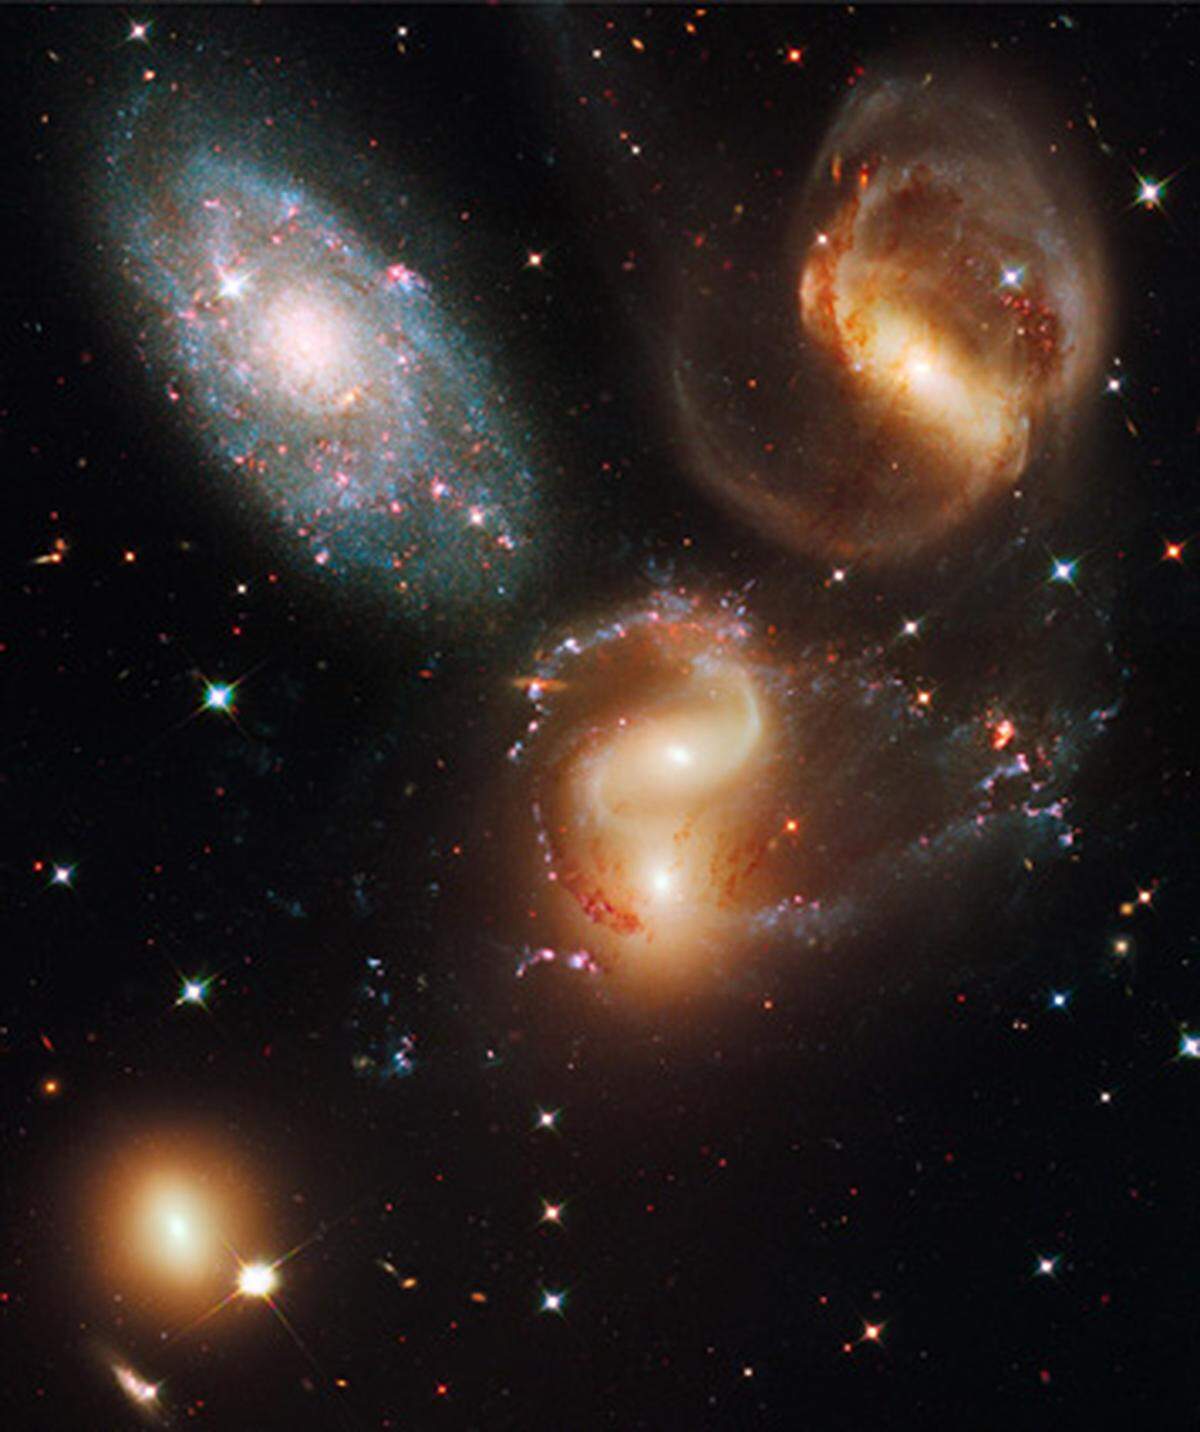 Stephan's Quintett, auch bekannt als Hickson Compact Group 92, wurde mit der neuen Wide Field Camera 3 an Bord des Hubble aufgenommen. Hier handelt es sich um eine Gruppe von fünf Galaxien, deren Gravitationsfelder sich zum Teil beeinflussen.